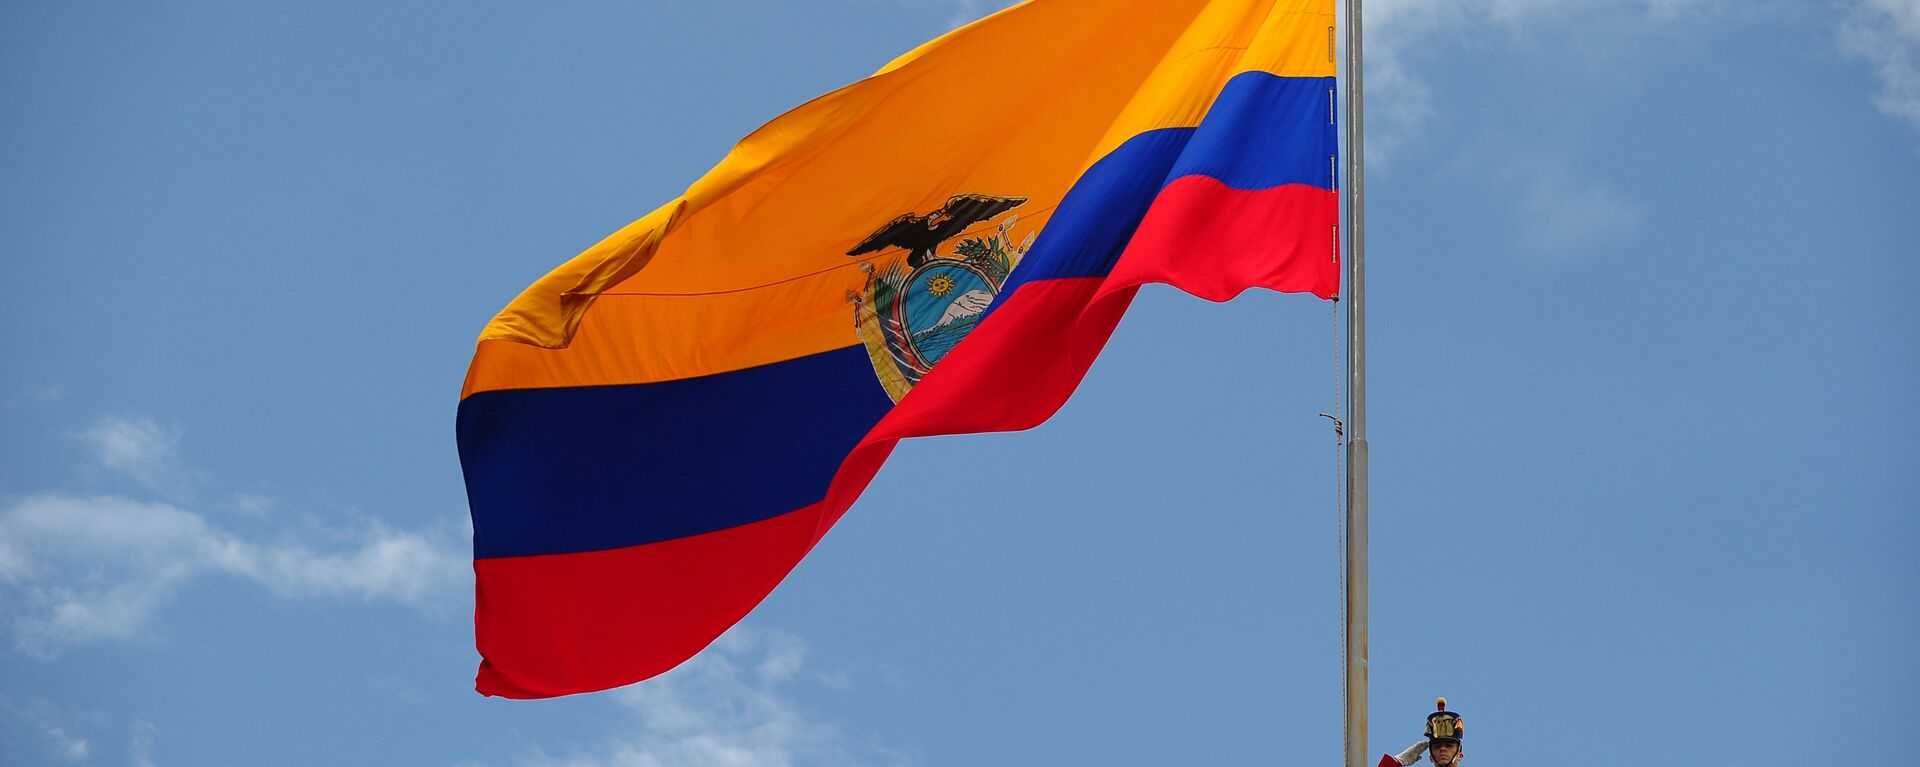 Bandera de Ecuador - Sputnik Mundo, 1920, 26.08.2021